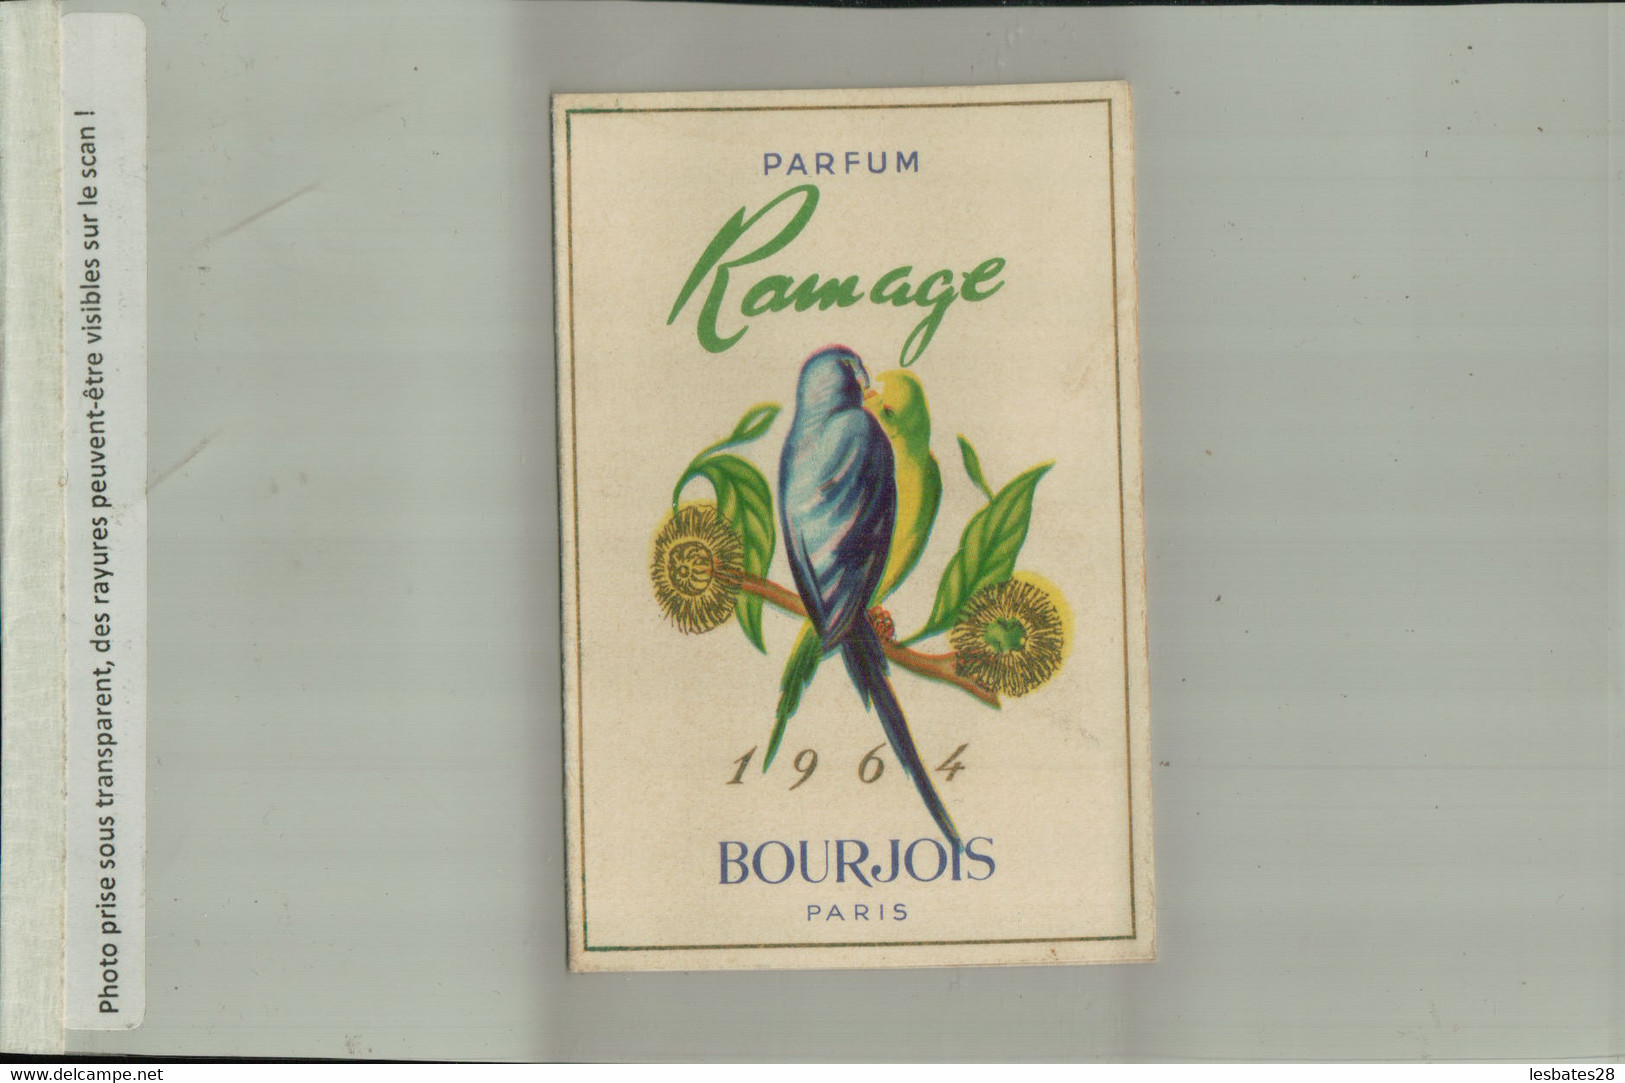 PARFUM RAMAGE BOURJOIS PARIS CALENDRIER 1964 Publicité  Parfumerie Coifure  MONTSAUCHE   (AVRI 2021 ABL 074) - Kleinformat : 1961-70